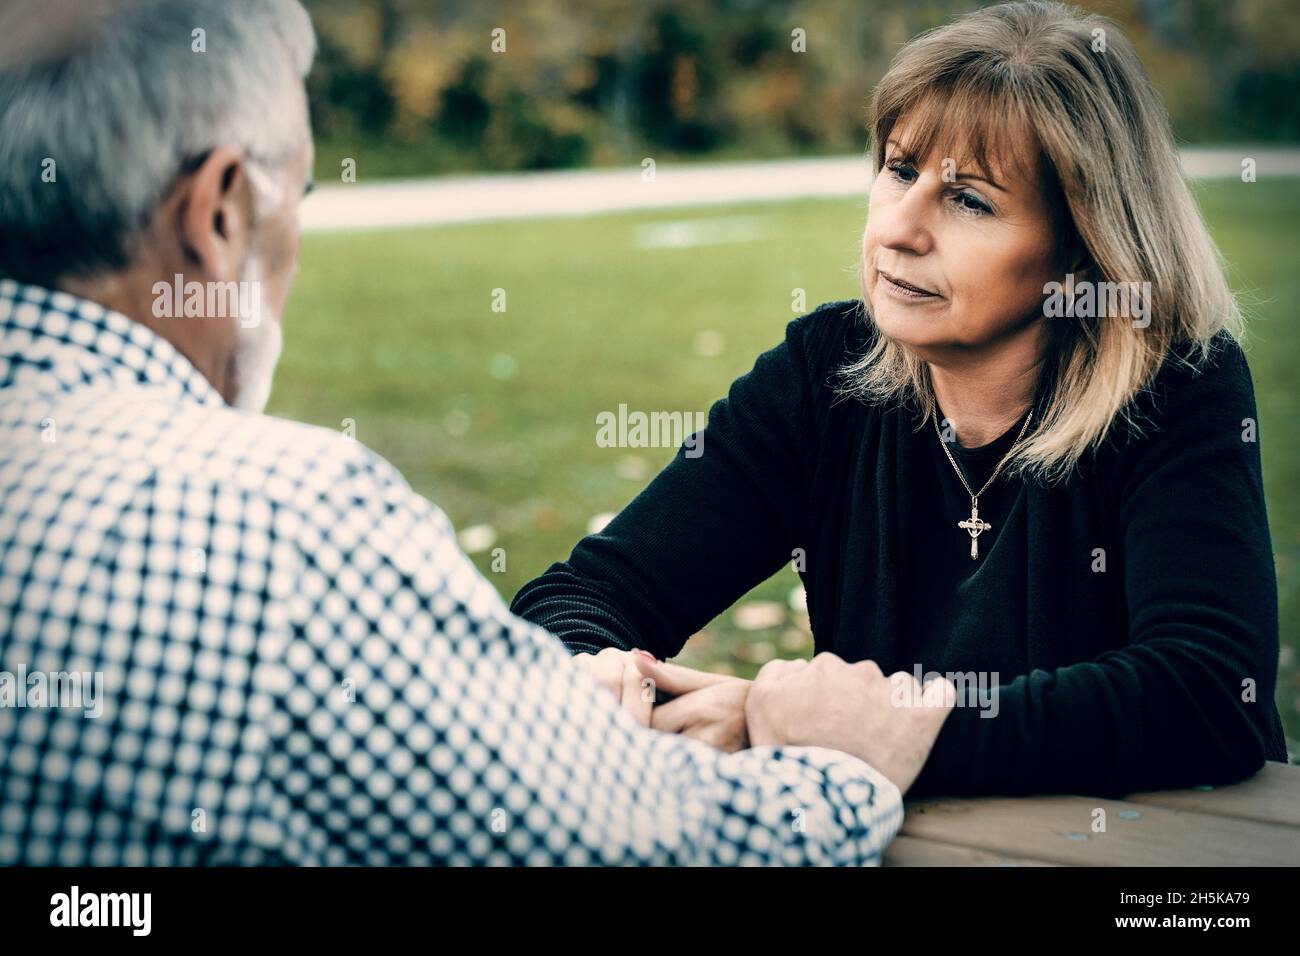 Un couple mature tenant la main à une table de pique-nique après avoir passé un certain temps de qualité à discuter de leur relation; St. Albert, Alberta, Canada Banque D'Images